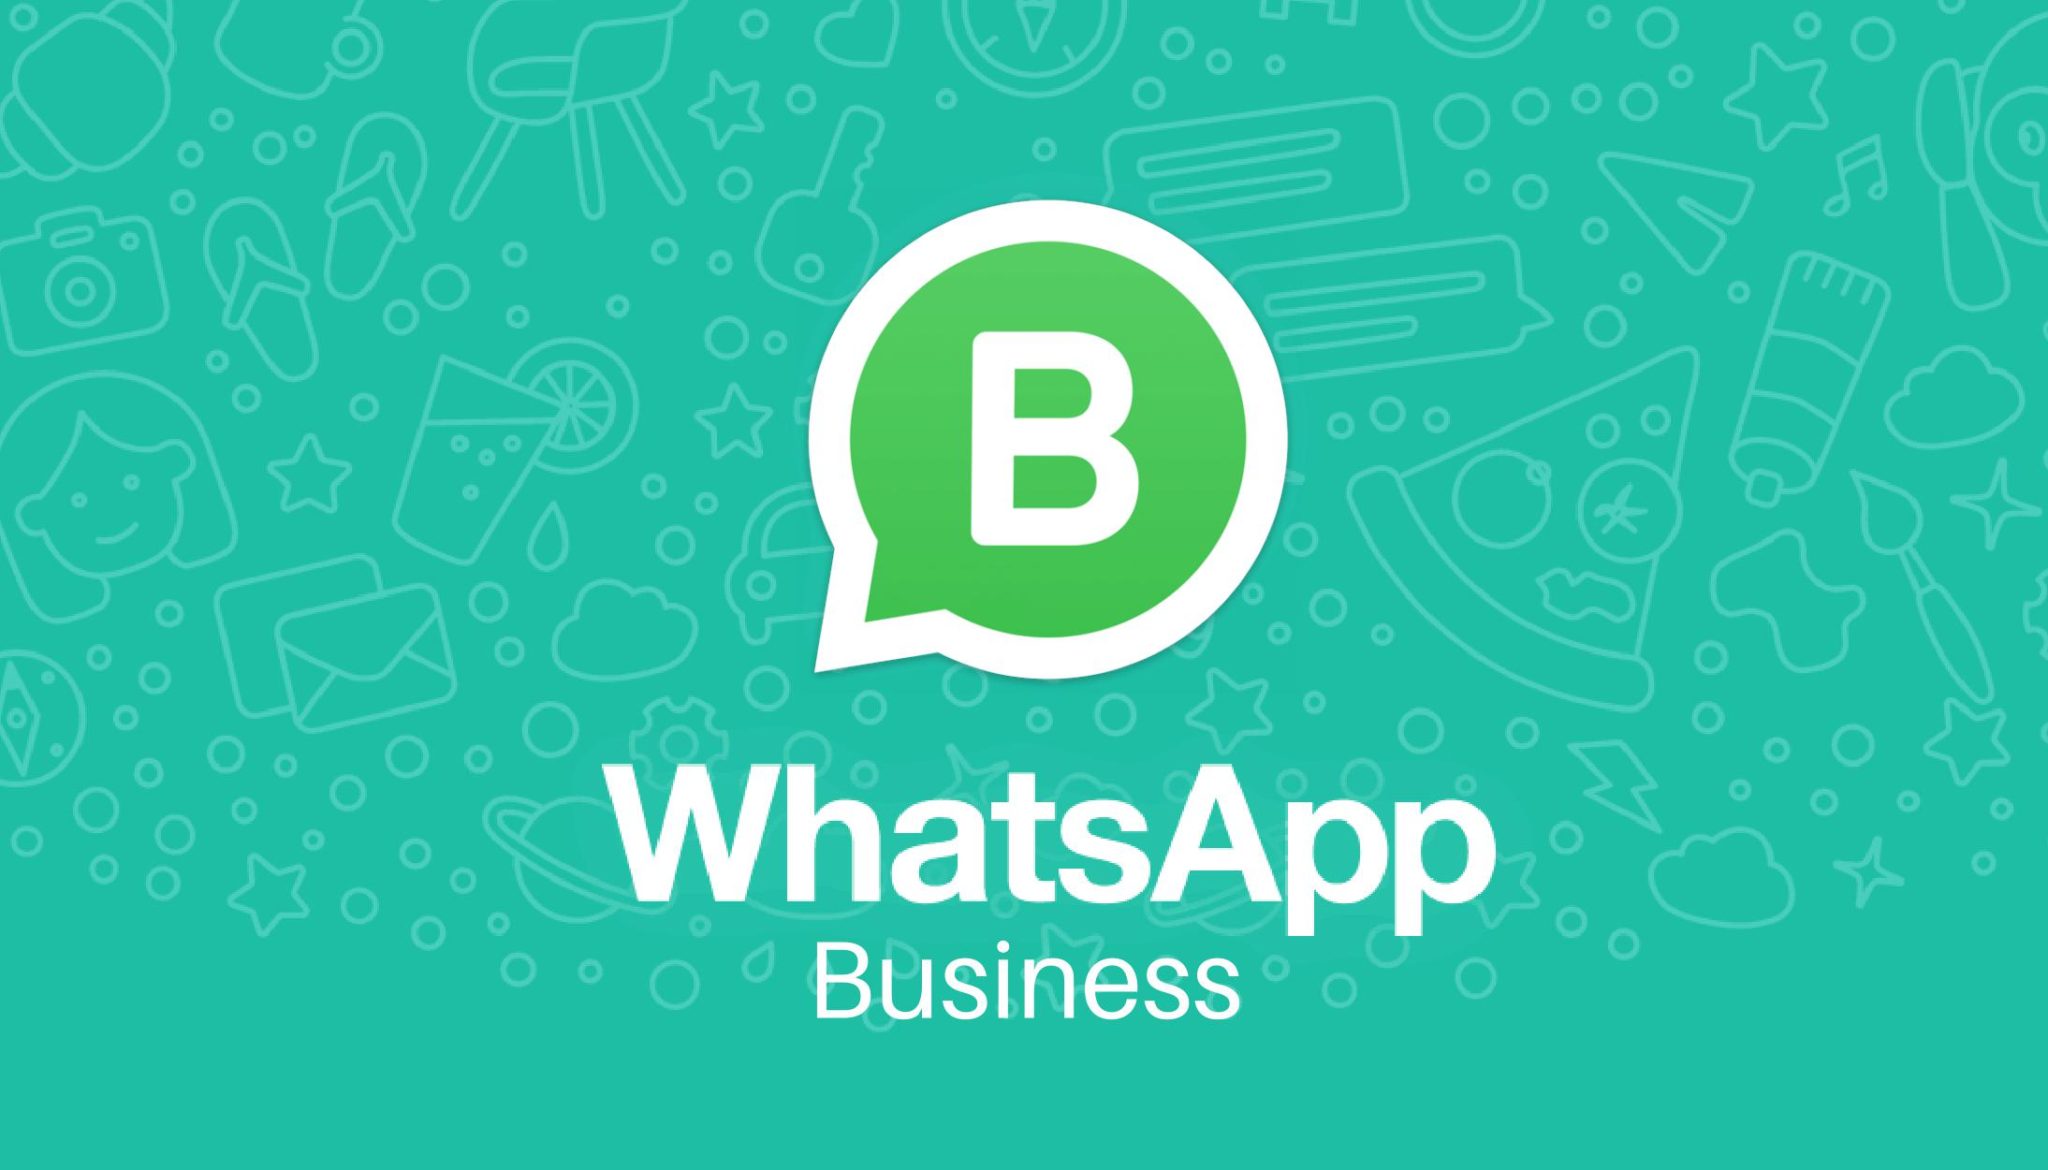 WhatsApp Business: o que é e o que oferece em relação ao WhatsApp normal